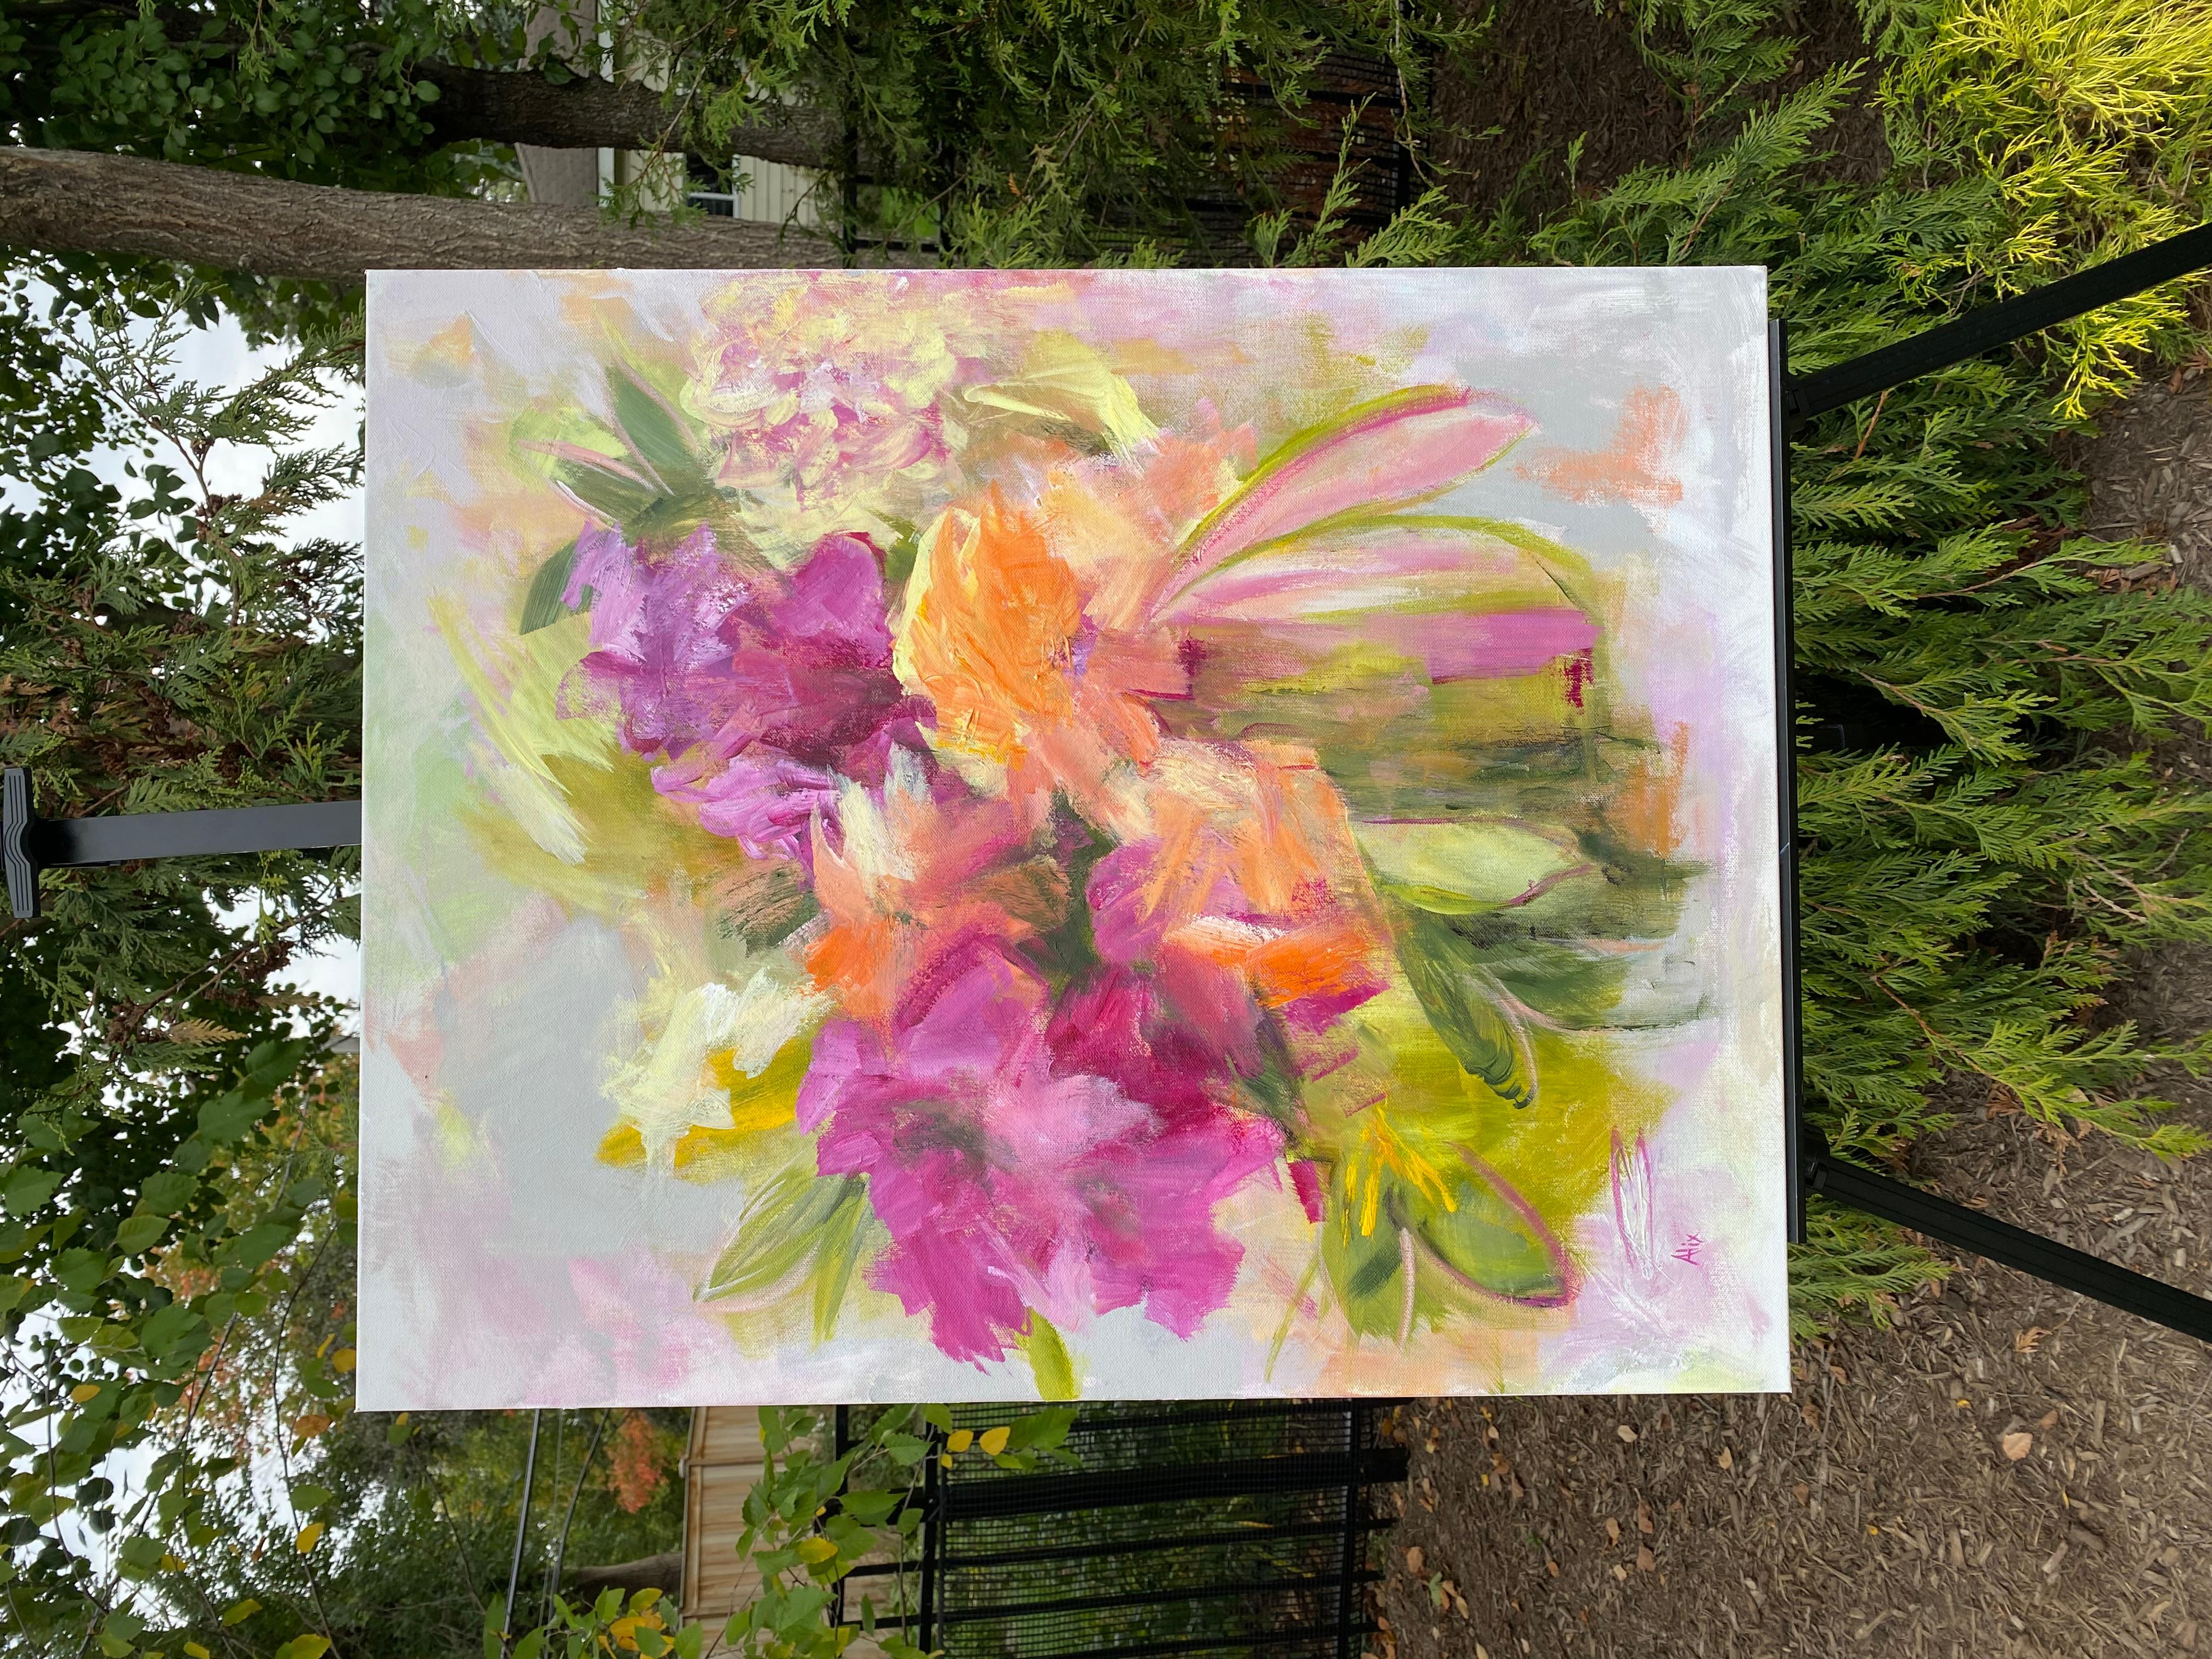 <p>Kommentare der Künstlerin<br>Die Künstlerin Alix Palo präsentiert ein lebhaftes Blumenarrangement mit einer sanften und farbenfrohen Farbpalette. Vor einem hellgrauen Hintergrund erwachen die Blumen zum Leben und schmücken die Komposition mit